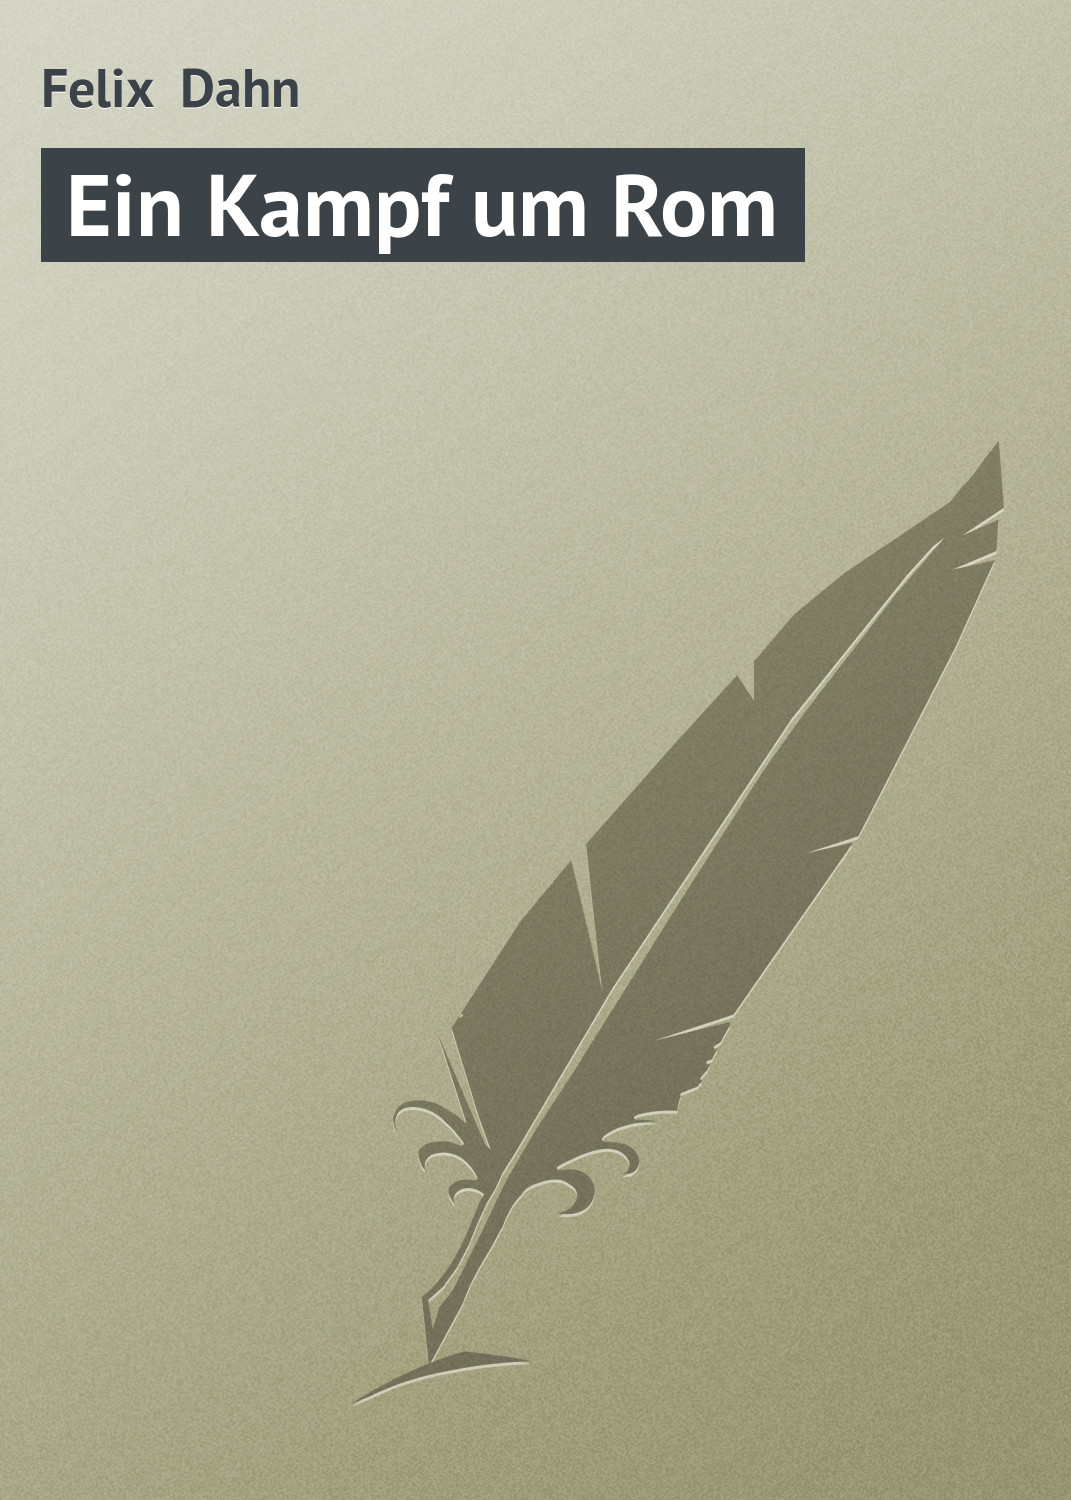 Книга Ein Kampf um Rom из серии , созданная Felix Dahn, может относится к жанру Зарубежная старинная литература, Зарубежная классика. Стоимость электронной книги Ein Kampf um Rom с идентификатором 21104558 составляет 5.99 руб.